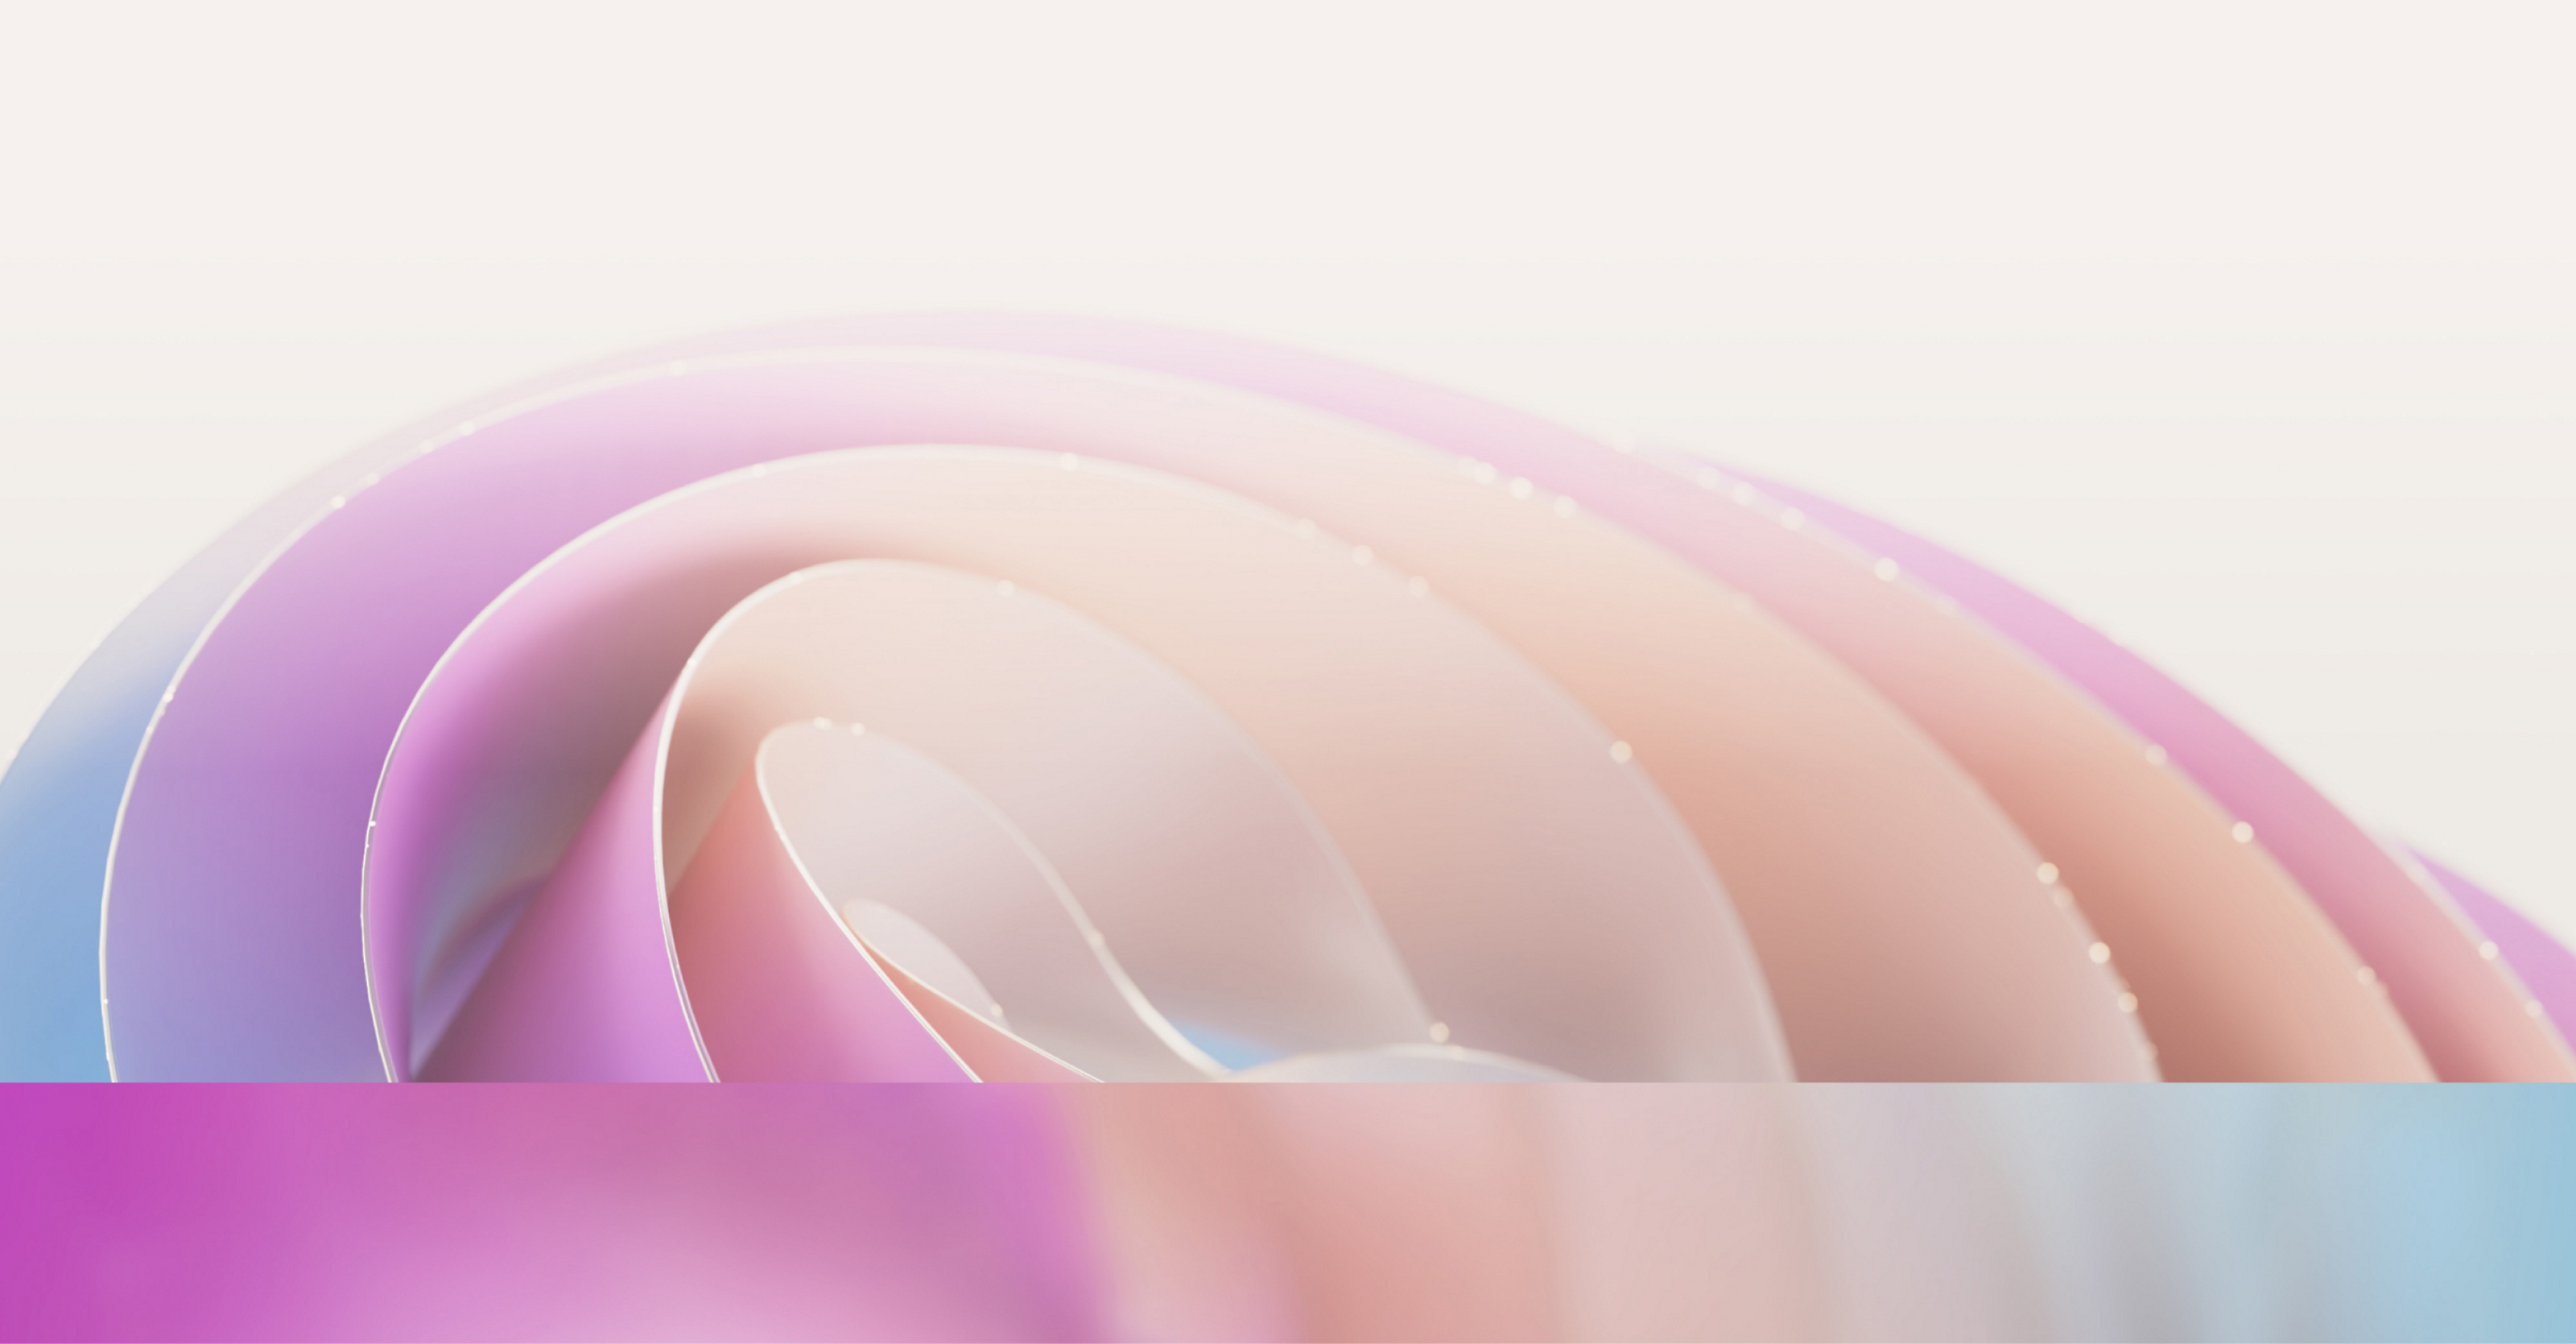 Abstrakter Hintergrund mit weichen wellenähnlichen Schichten in rosa, lila und blauen Pastellfarbtönen mit einem leuchtenden, weichen Fokuseffekt.